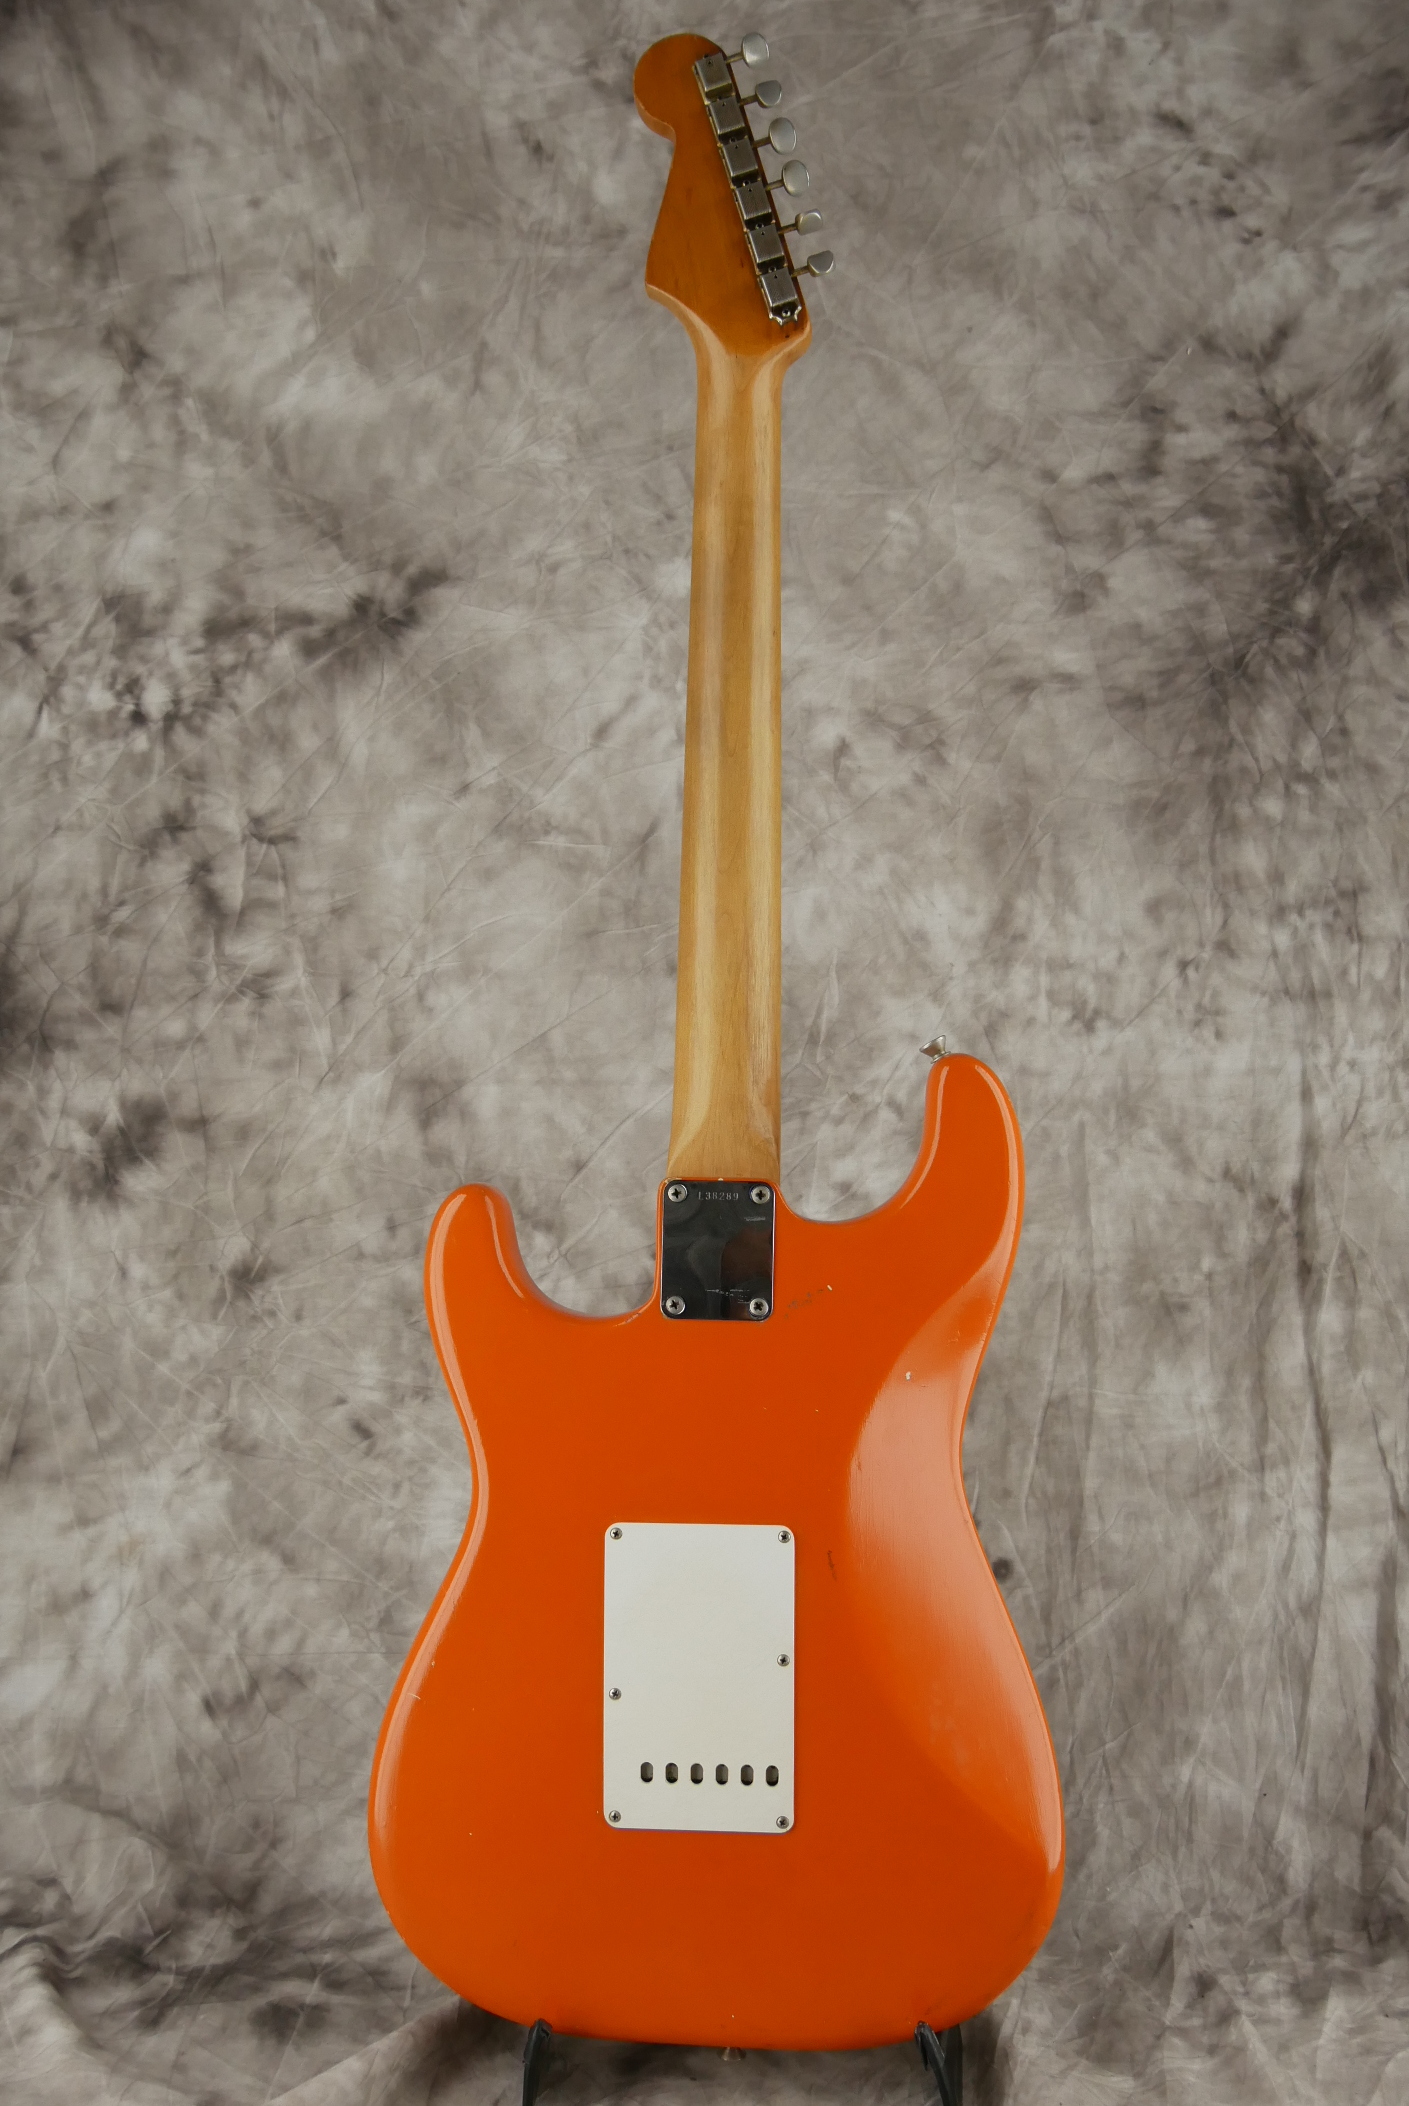 Fender-Stratocaster-1964-orange-refinish-003.JPG